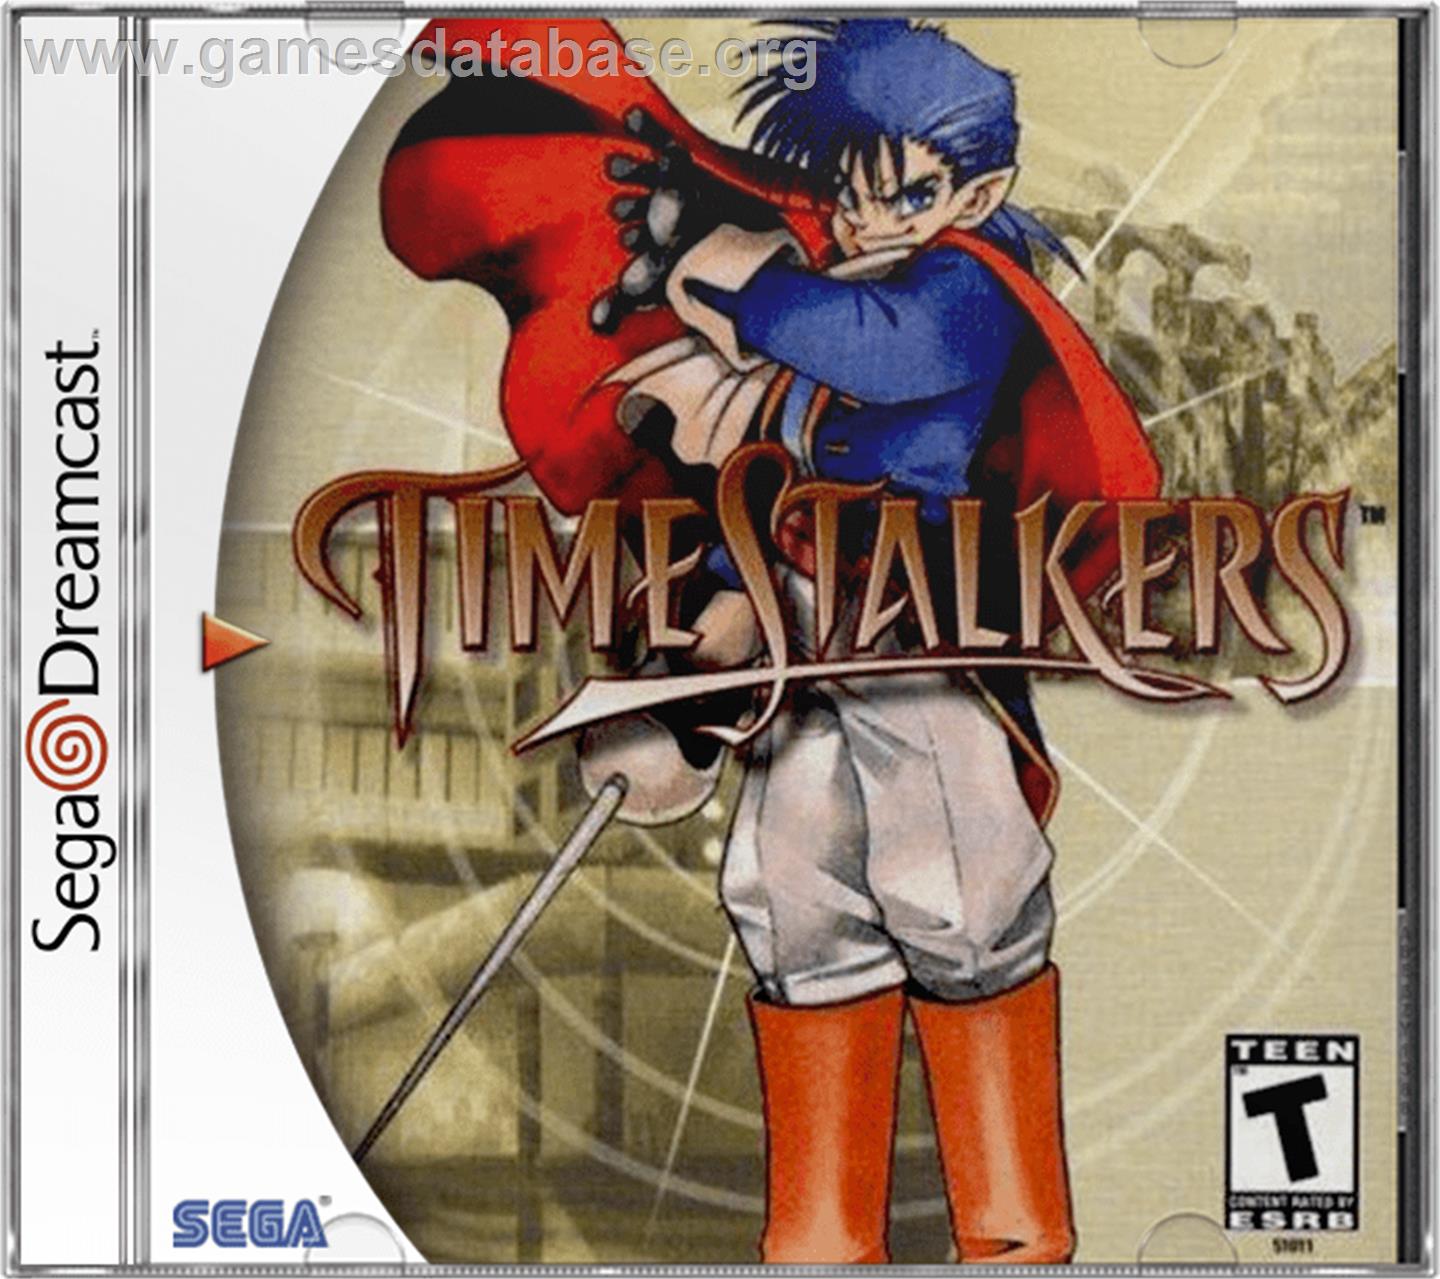 Time Stalkers - Sega Dreamcast - Artwork - Box